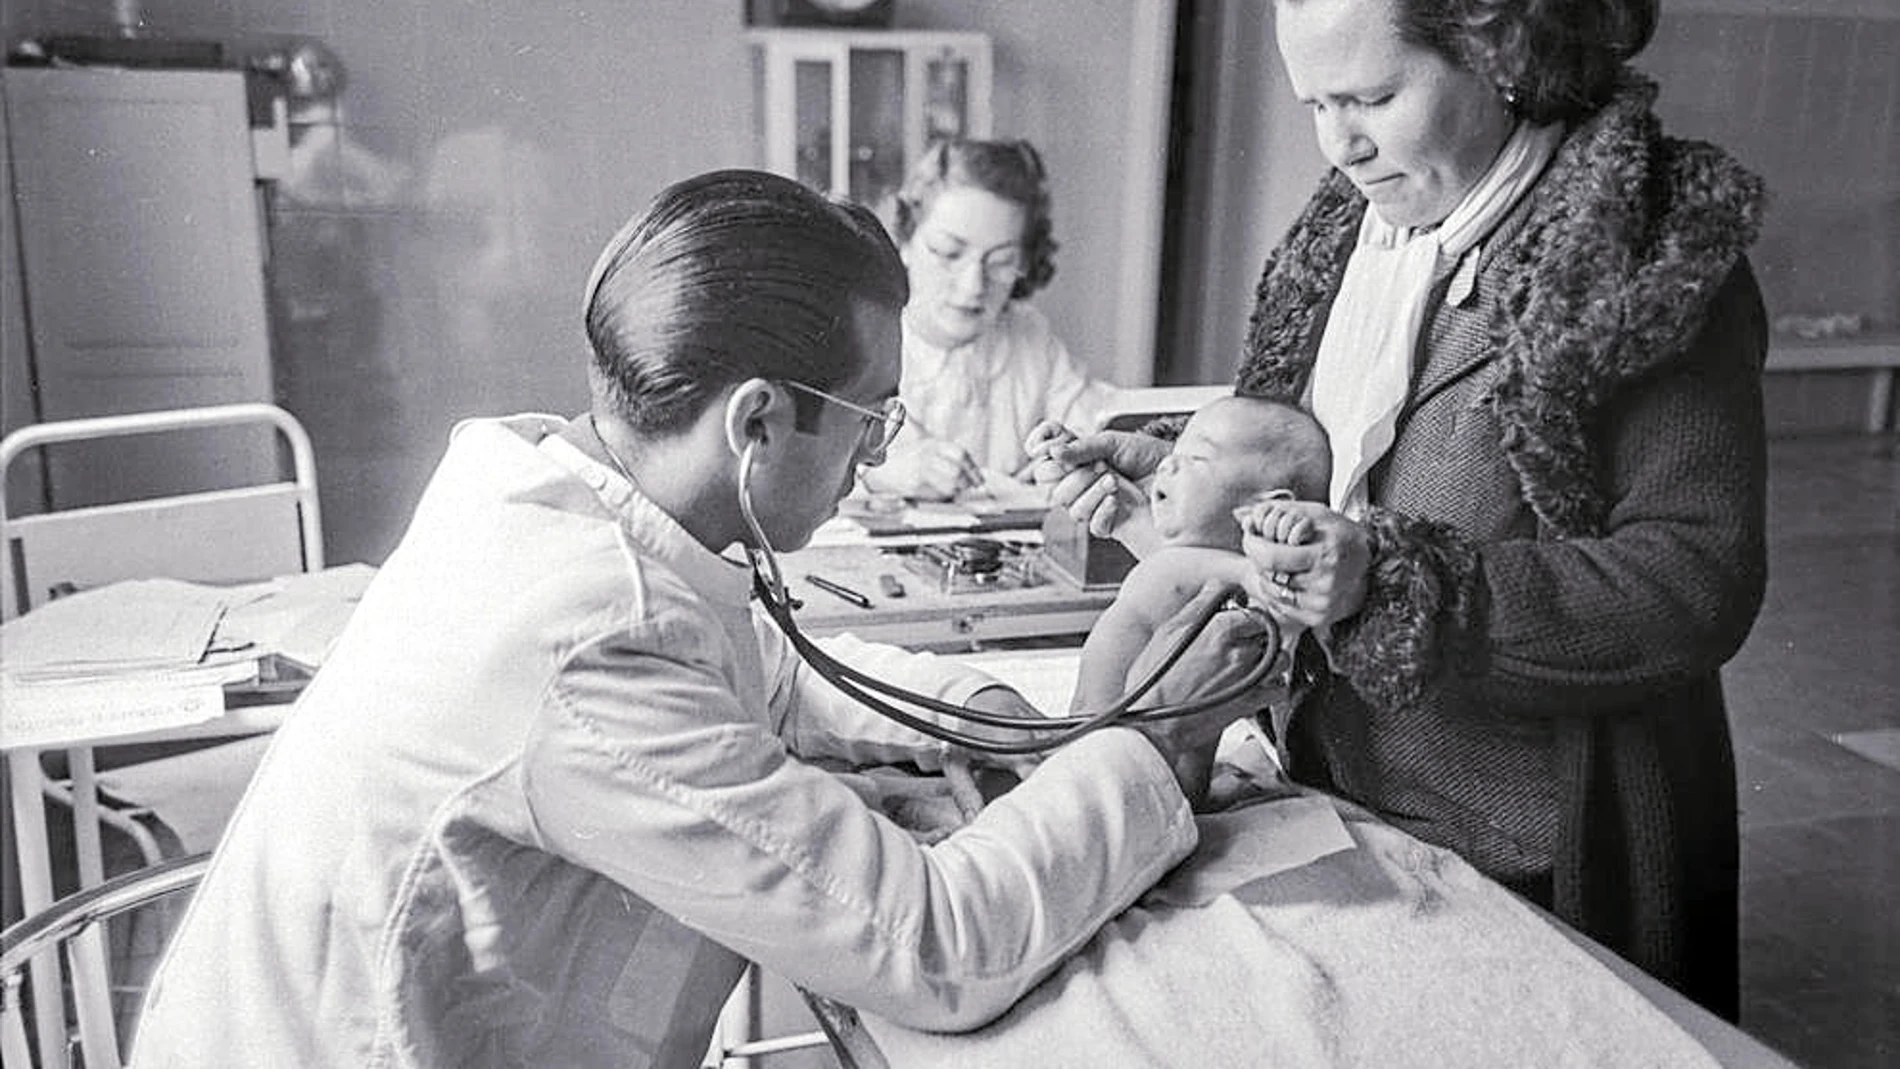 Dos siglos de avances. Desde los inicios de 1900 cuando se empezaron a probar las primeras vacunas contra la polio y la tosferina, los avances no se han detenido. En 1962 se desarrolló la primera vacuna contra el sarampión. En la imagen se muestra una revisión pediátrica en Madrid, en 1941